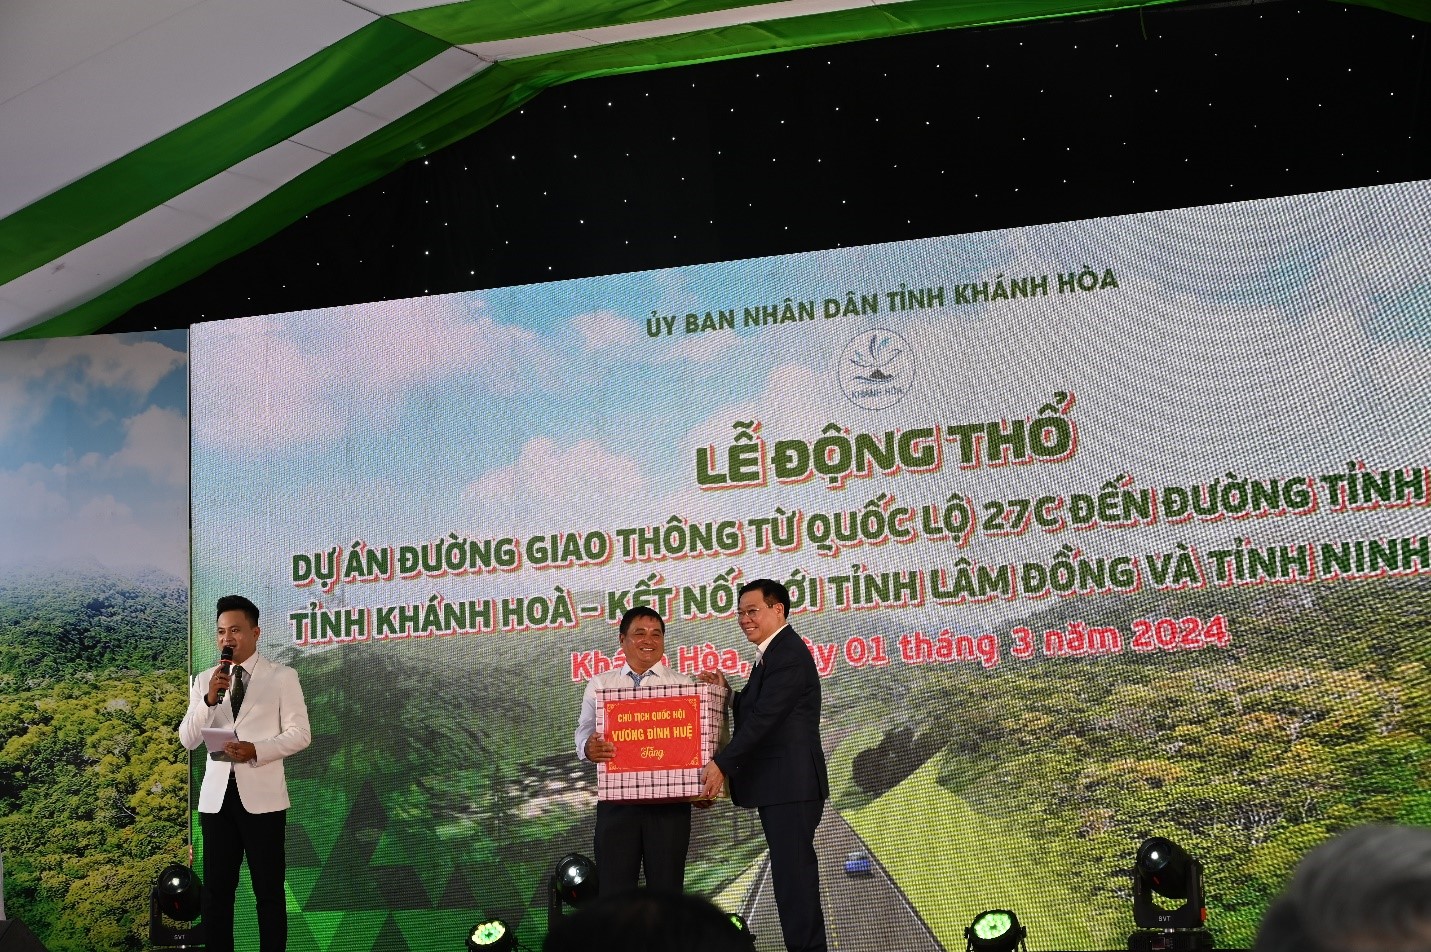 Tại sự kiện, Chủ tịch Quốc hội Vương Định Huệ đã tặng quà chúc mừng cho chủ đầu tư (Ban quản lý dự án đầu tư xây dựng các công trình giao thông tỉnh Khánh Hòa .